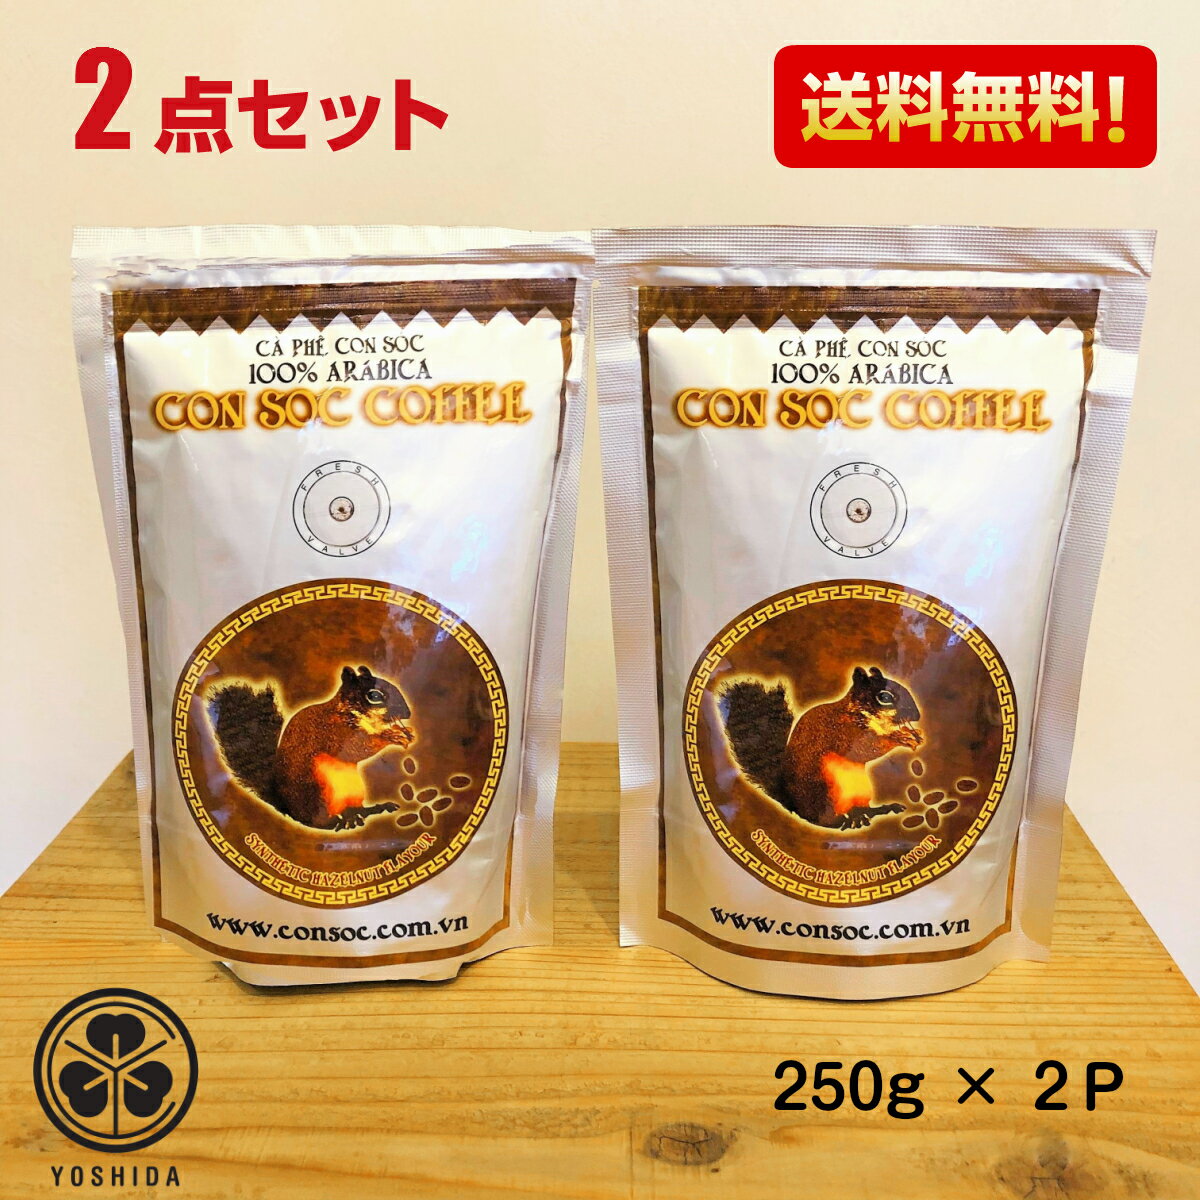 【送料無料2袋】ベトナムコーヒー CONSOC COFFEE 高級アラビカ 中挽き (250gx2) ヘーゼルナッツフレーバー コンソック Arabica 100% レギュラーコーヒー ドリップ粉